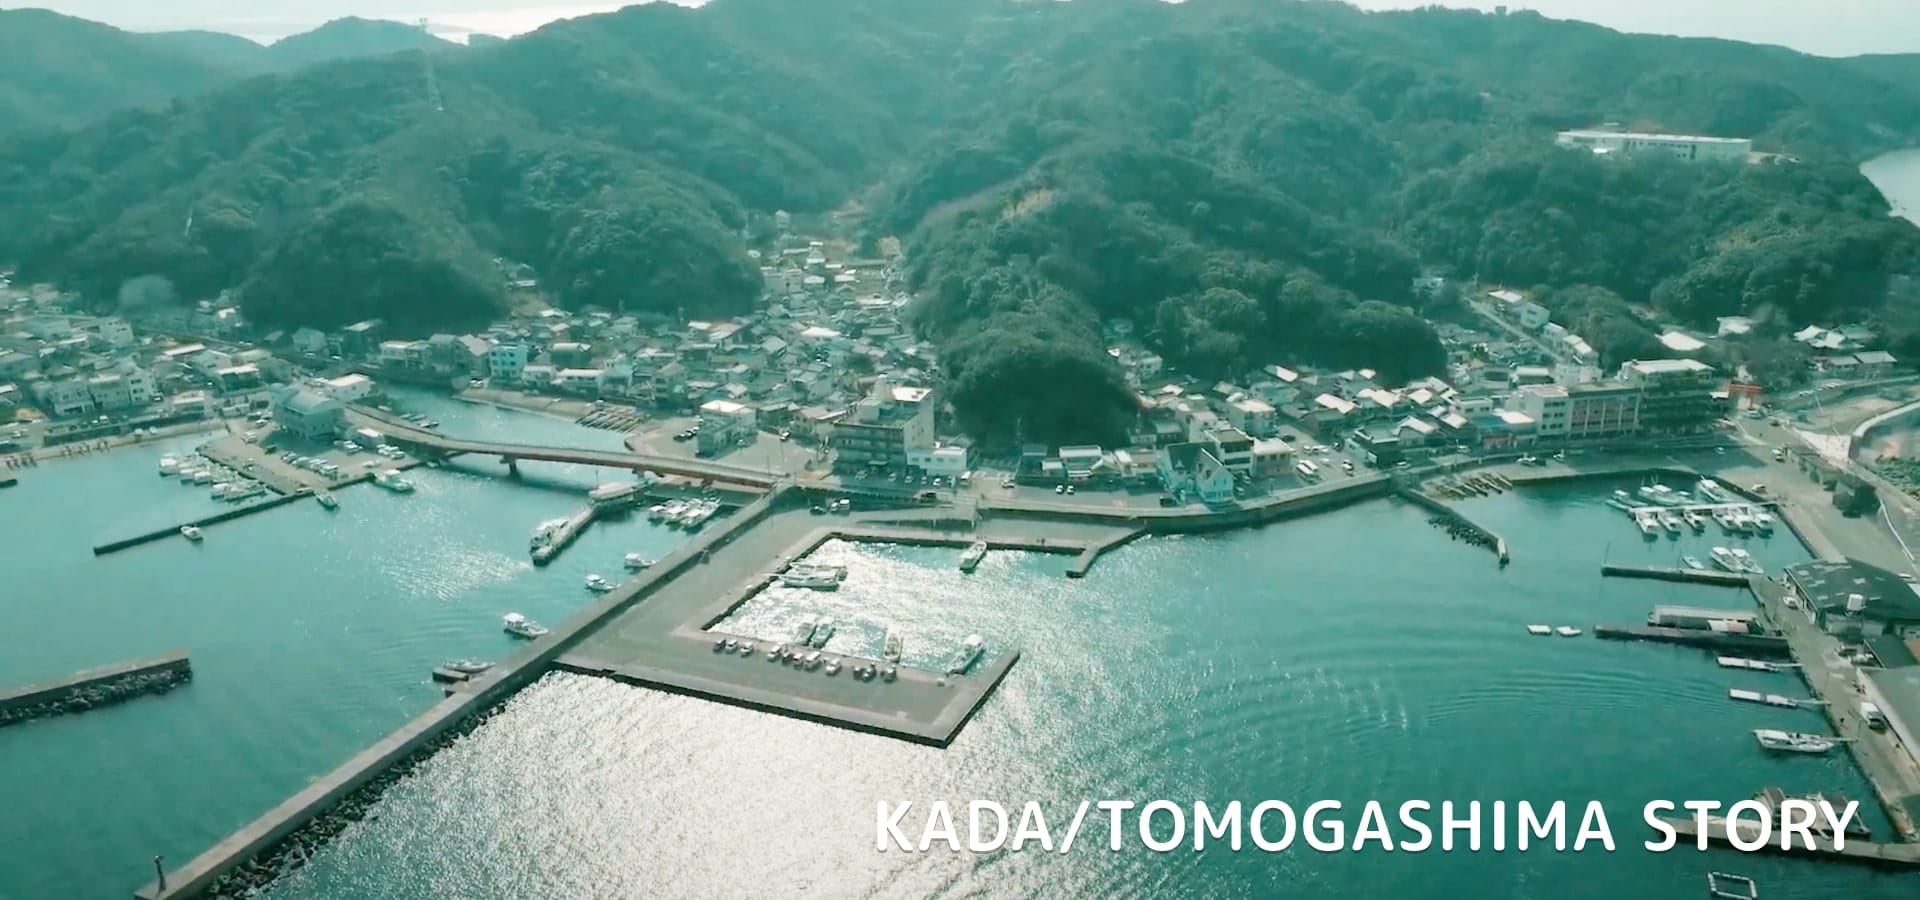 KADA/TOMOGASHIMA STORY